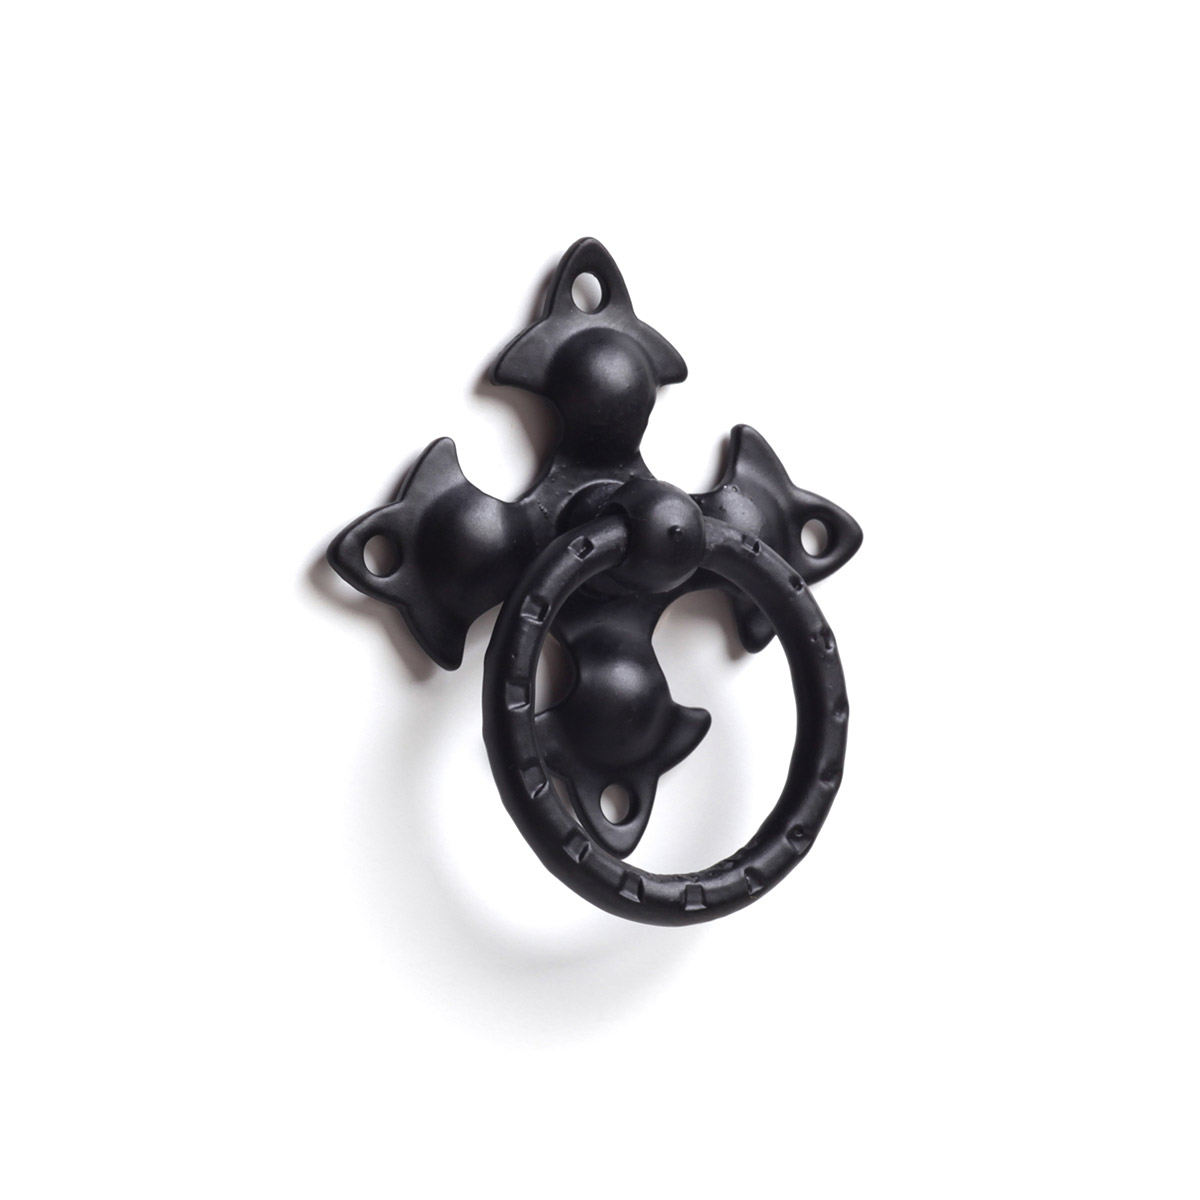 Anilla en acero con acabado negro forja, dimensiones: 57x63x15mm